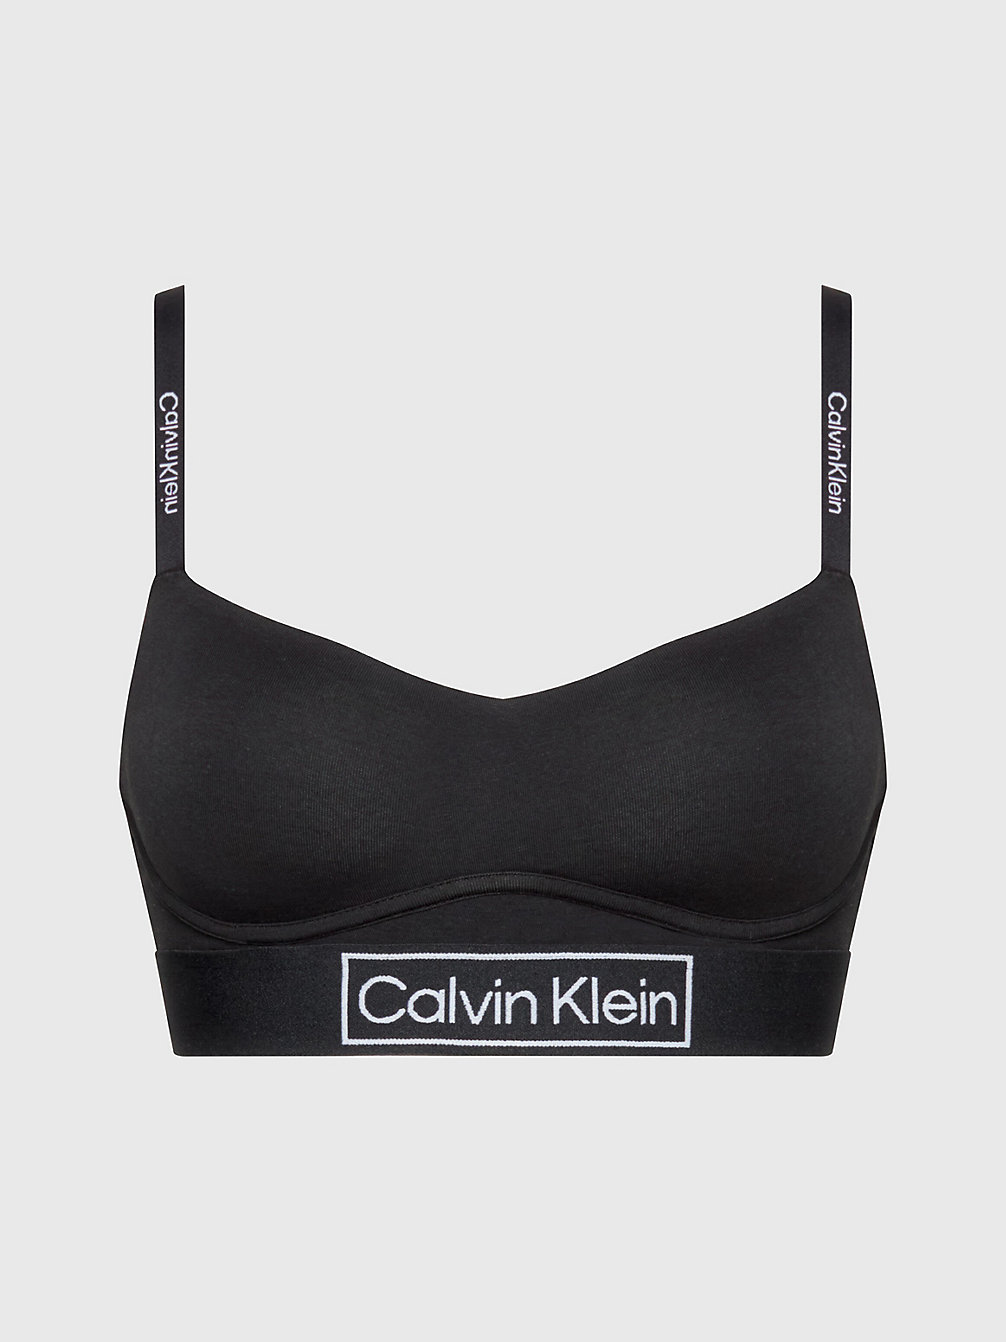 BLACK Bralette - Reimagined Heritage undefined Damen Calvin Klein